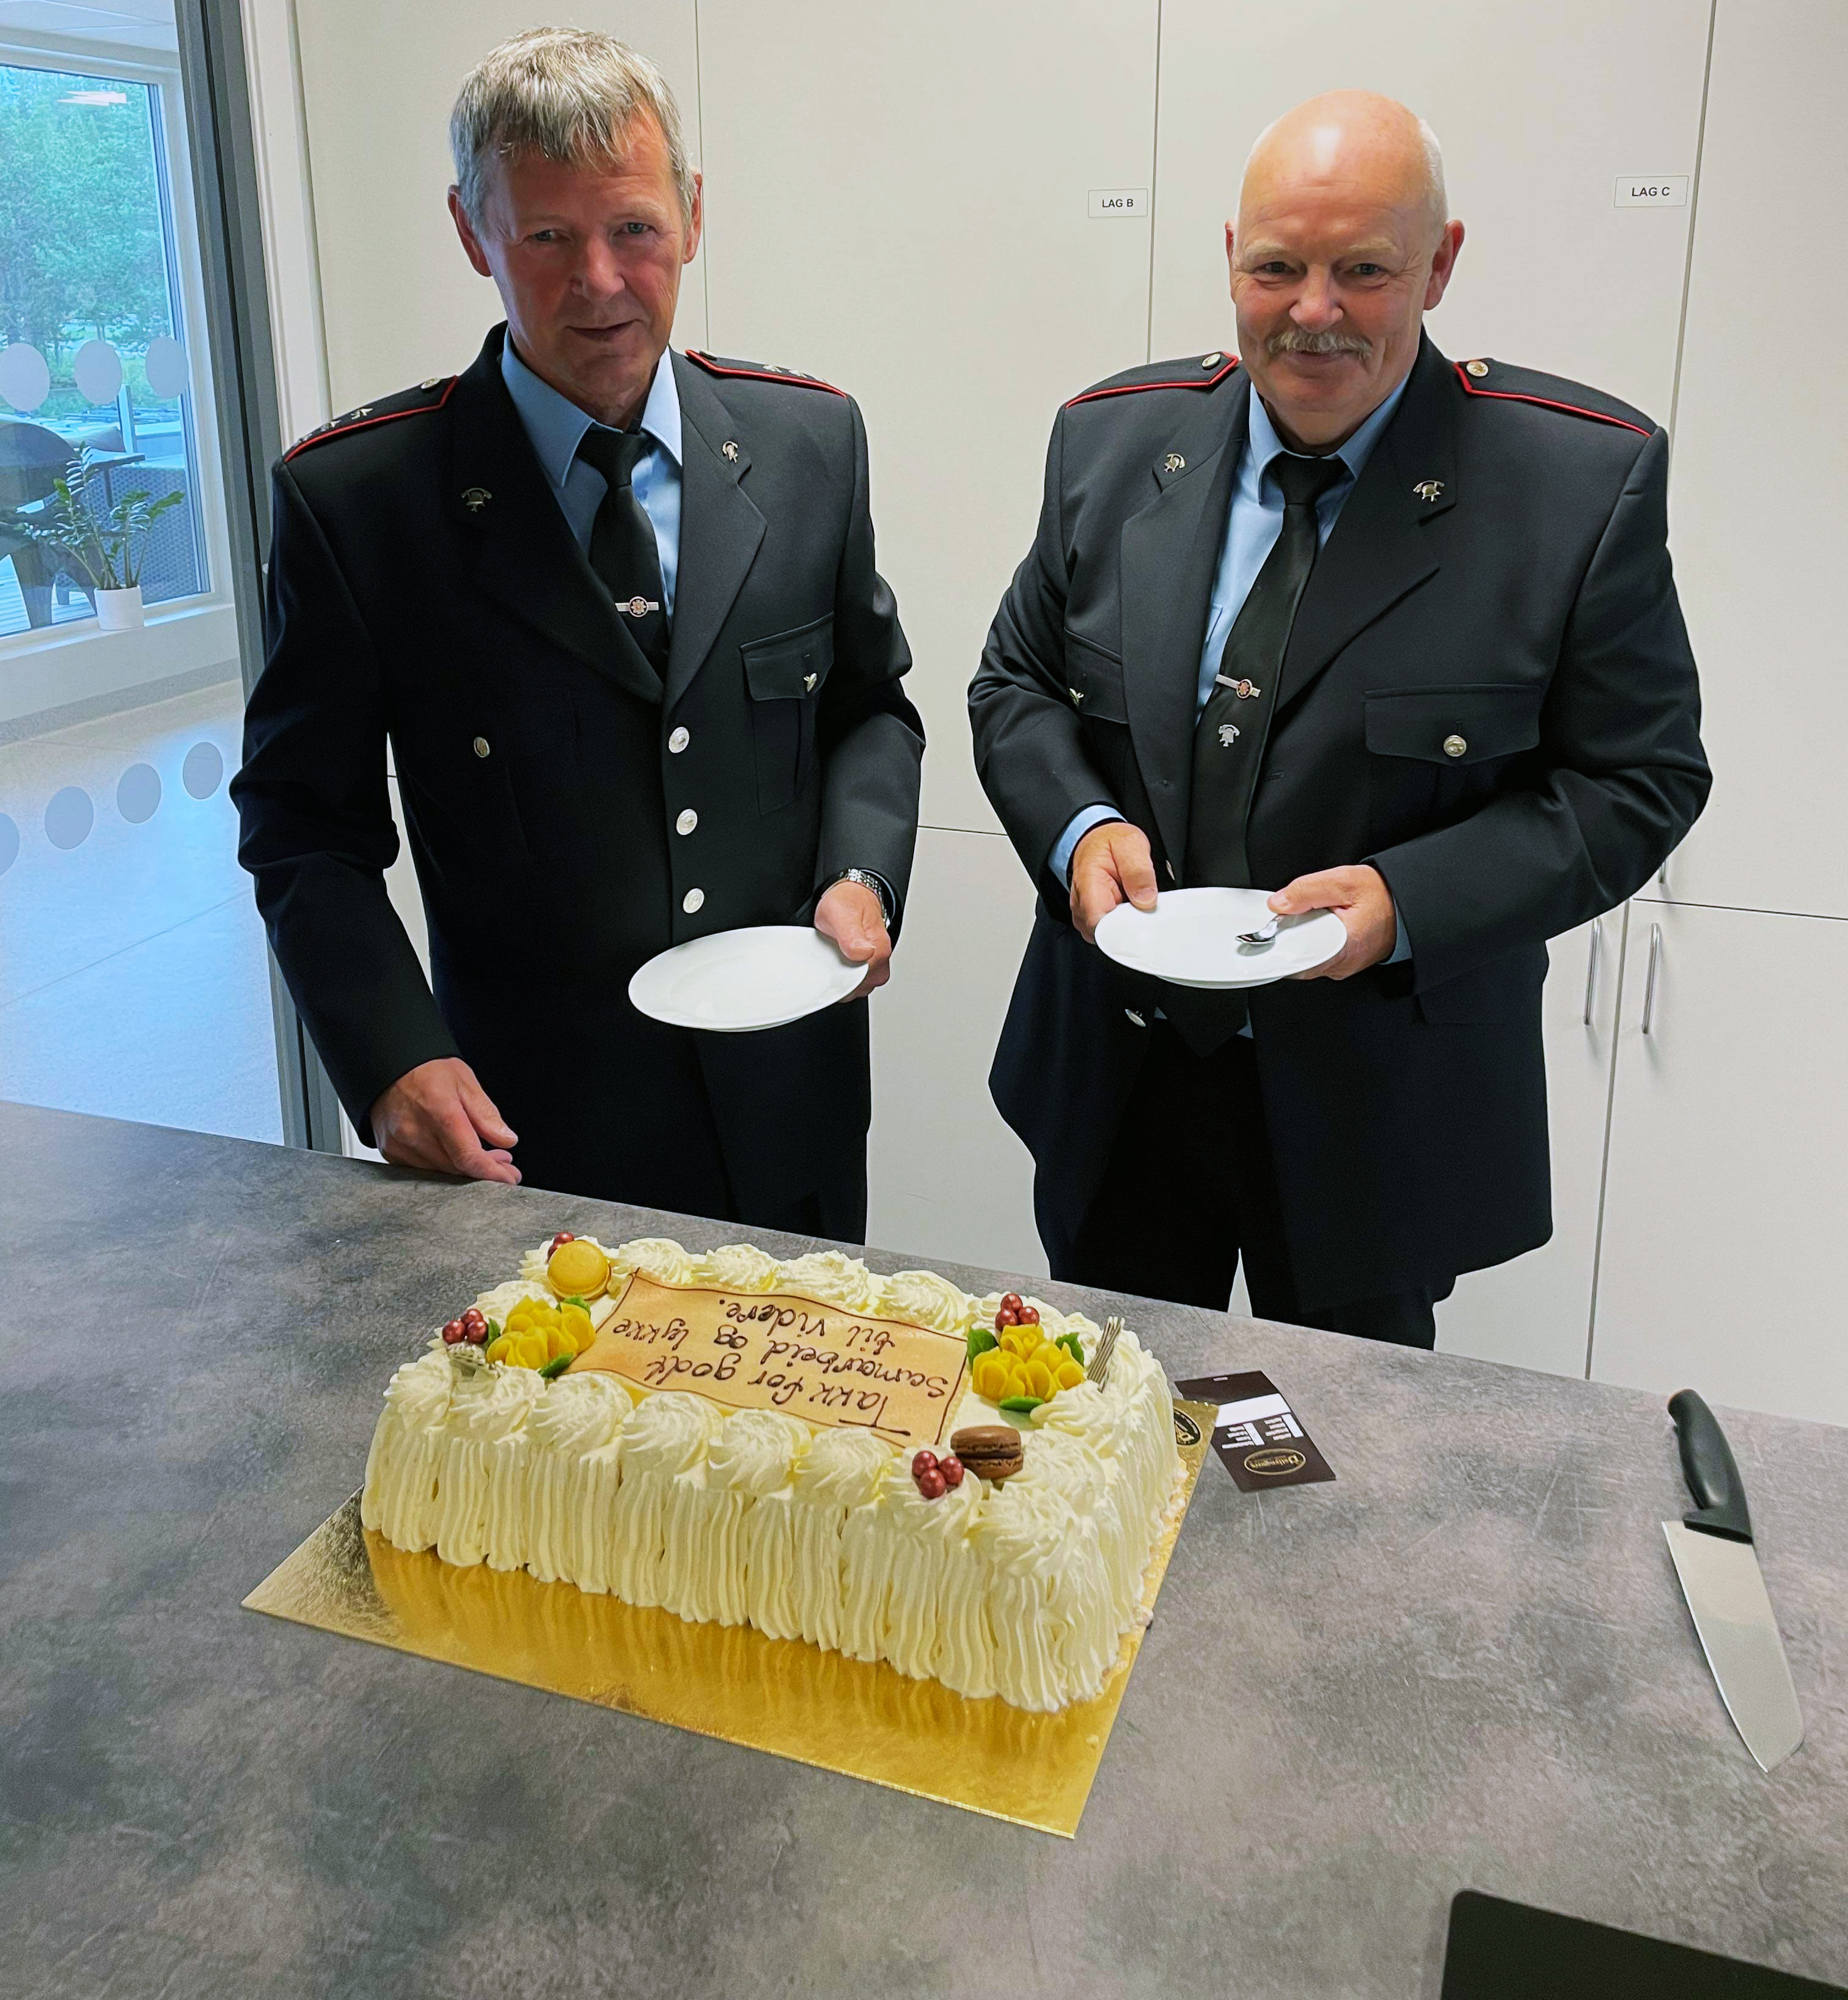 Svein Ole Arnesen og Asbjørn Sivertsen foran kake